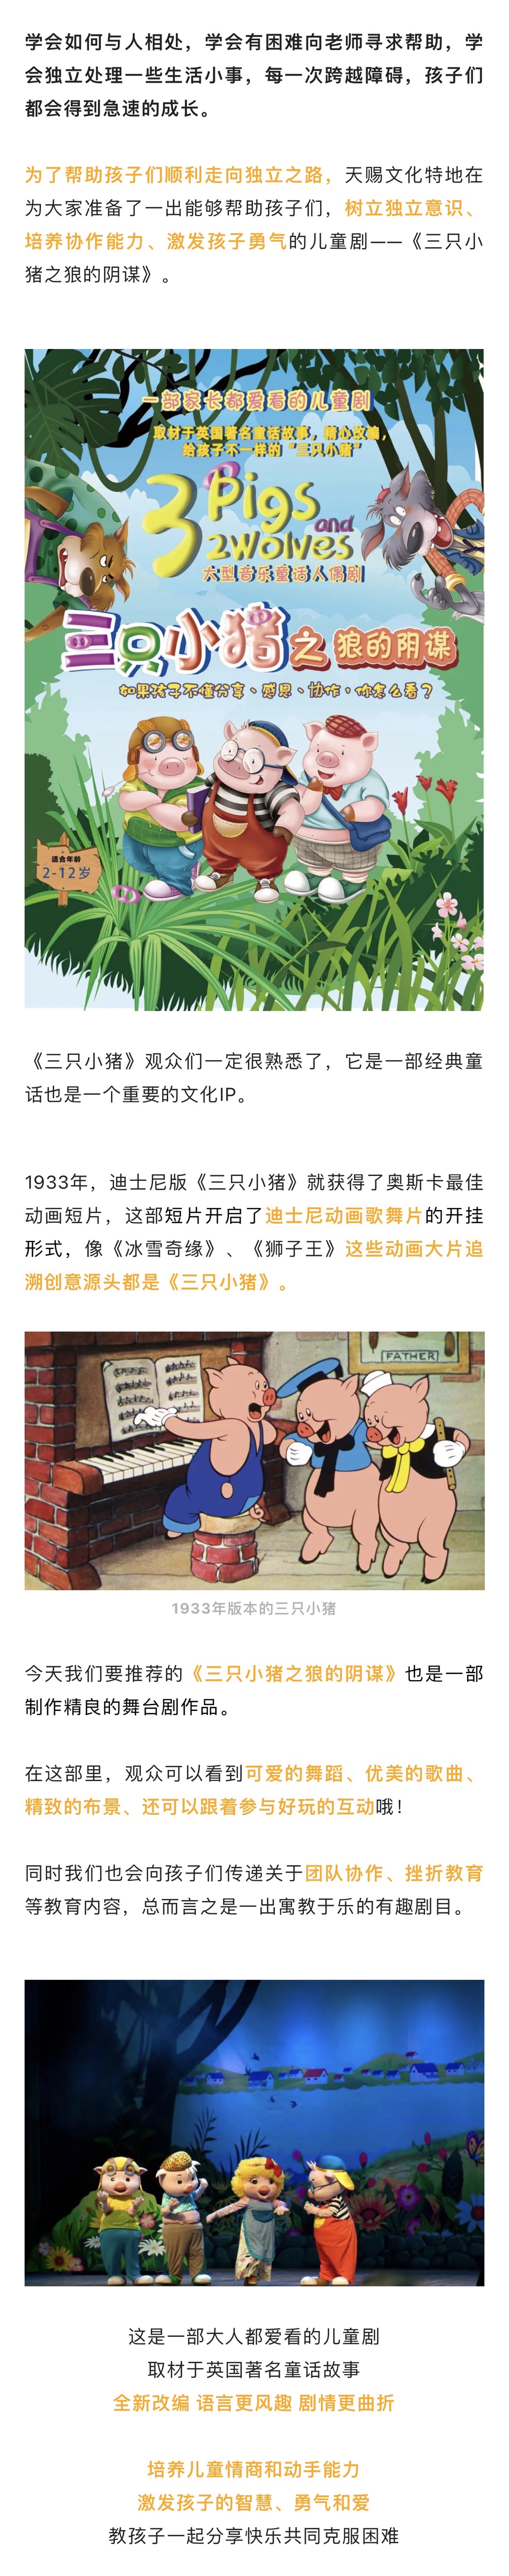 2022【天赐文化】丨大型童话音乐互动人偶剧《三只小猪之狼的阴谋》-广州站